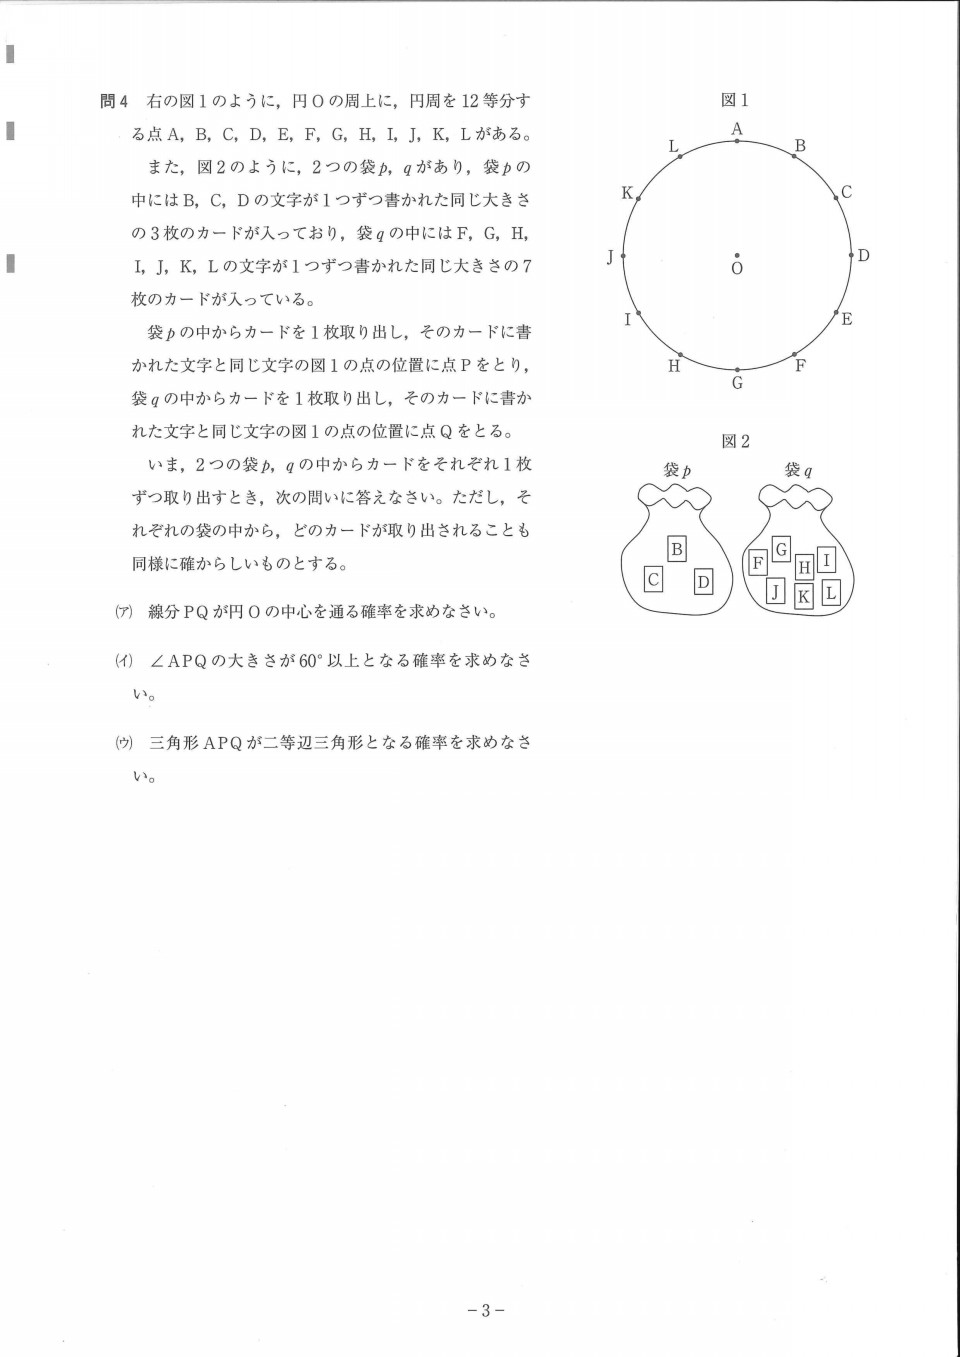 数学確率対策 大問先生の神奈川県公立高校入試問題攻略法 第二の